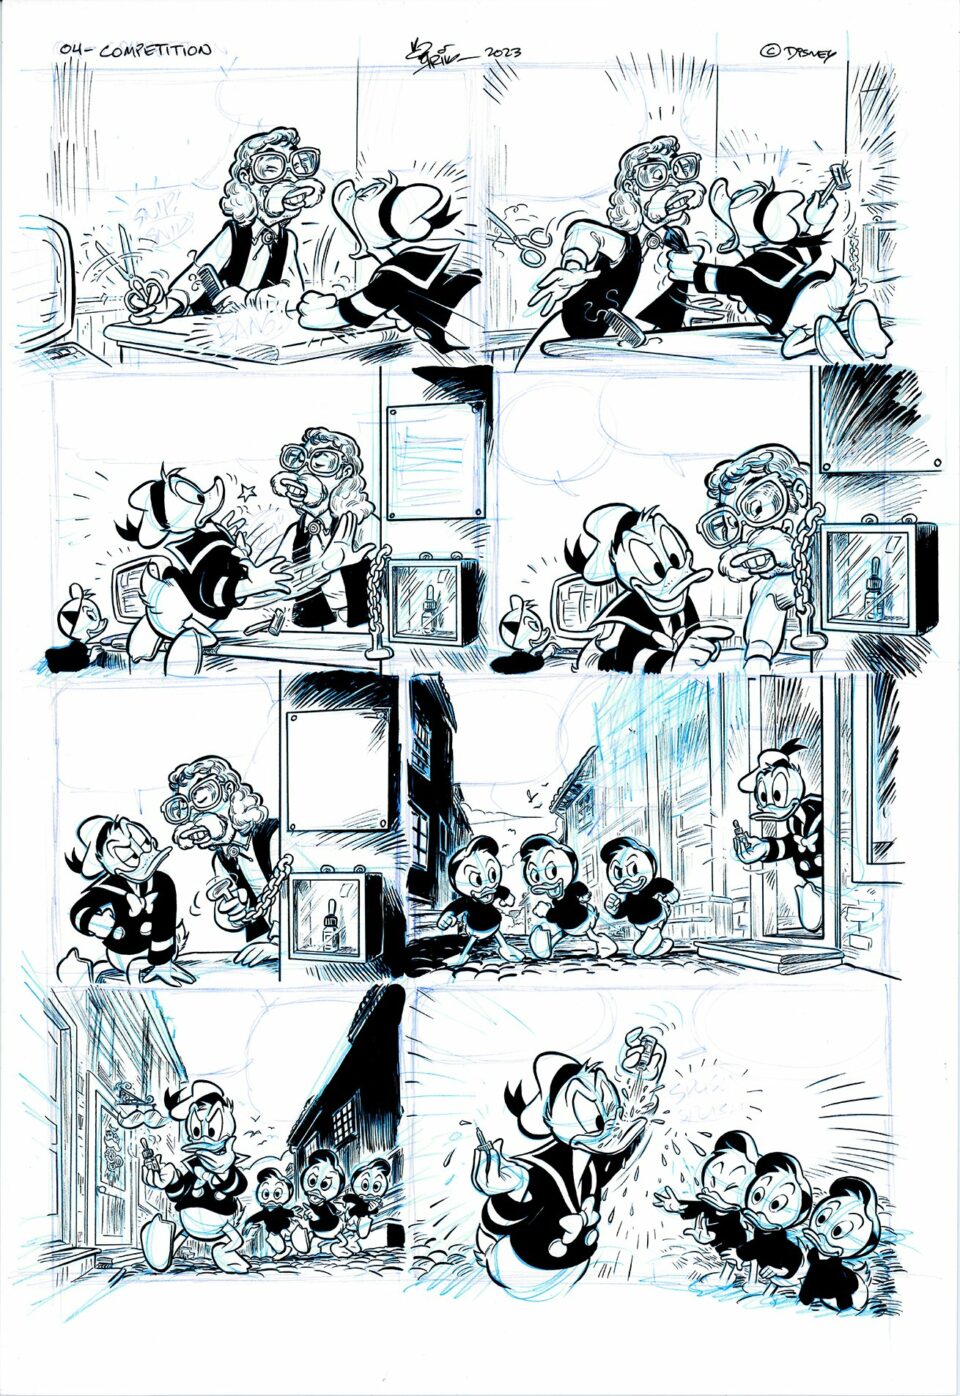 Tegneserie som viser Mikke Mus i forskjellige scener, inkludert matlaging, maling og å ta bilder med venner. svart-hvitt, detaljerte illustrasjoner.